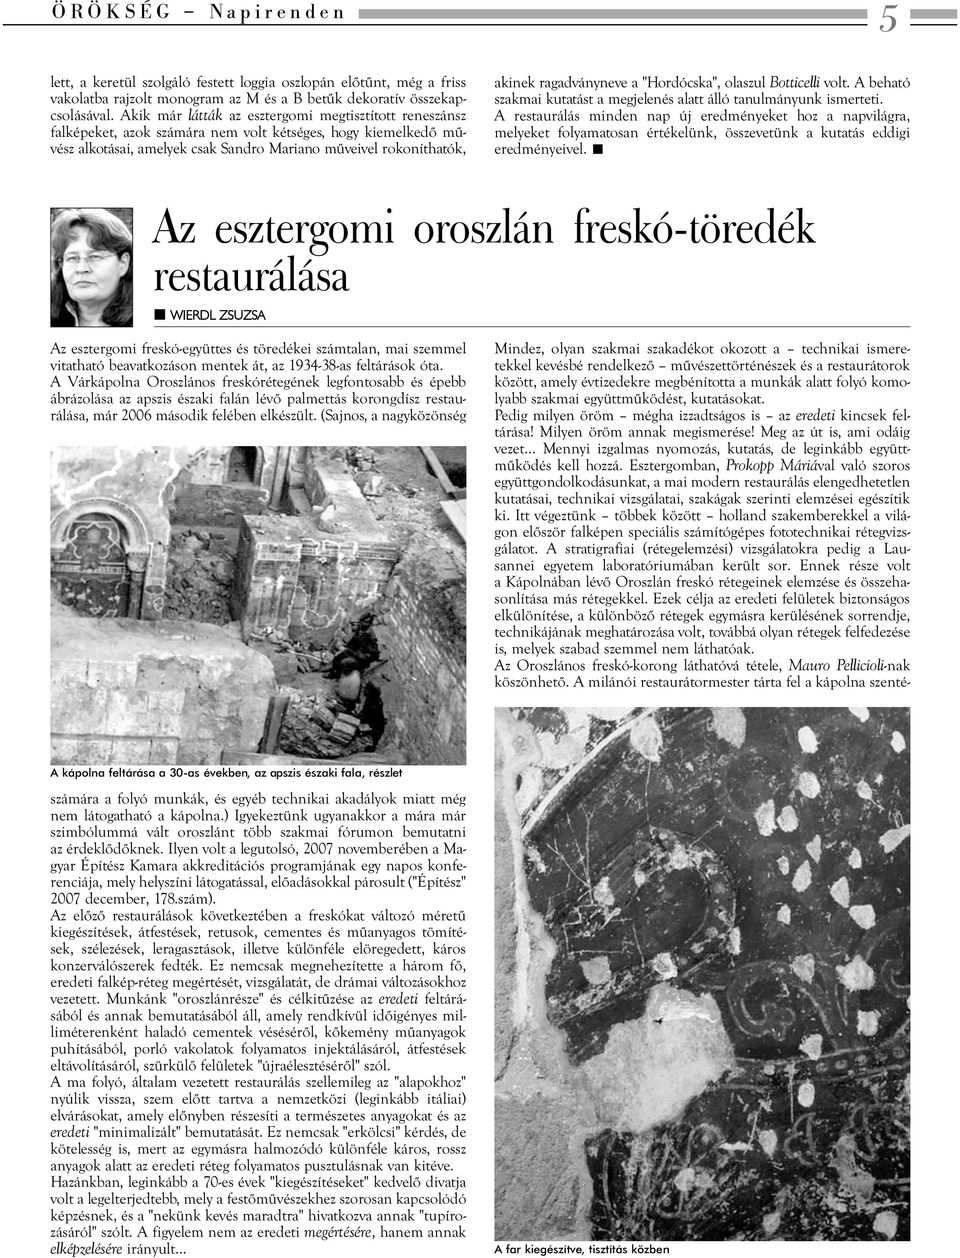 ragadványneve a "Hordócska", olaszul Botticelli volt. A beható szakmai kutatást a megjelenés alatt álló tanulmányunk ismerteti.